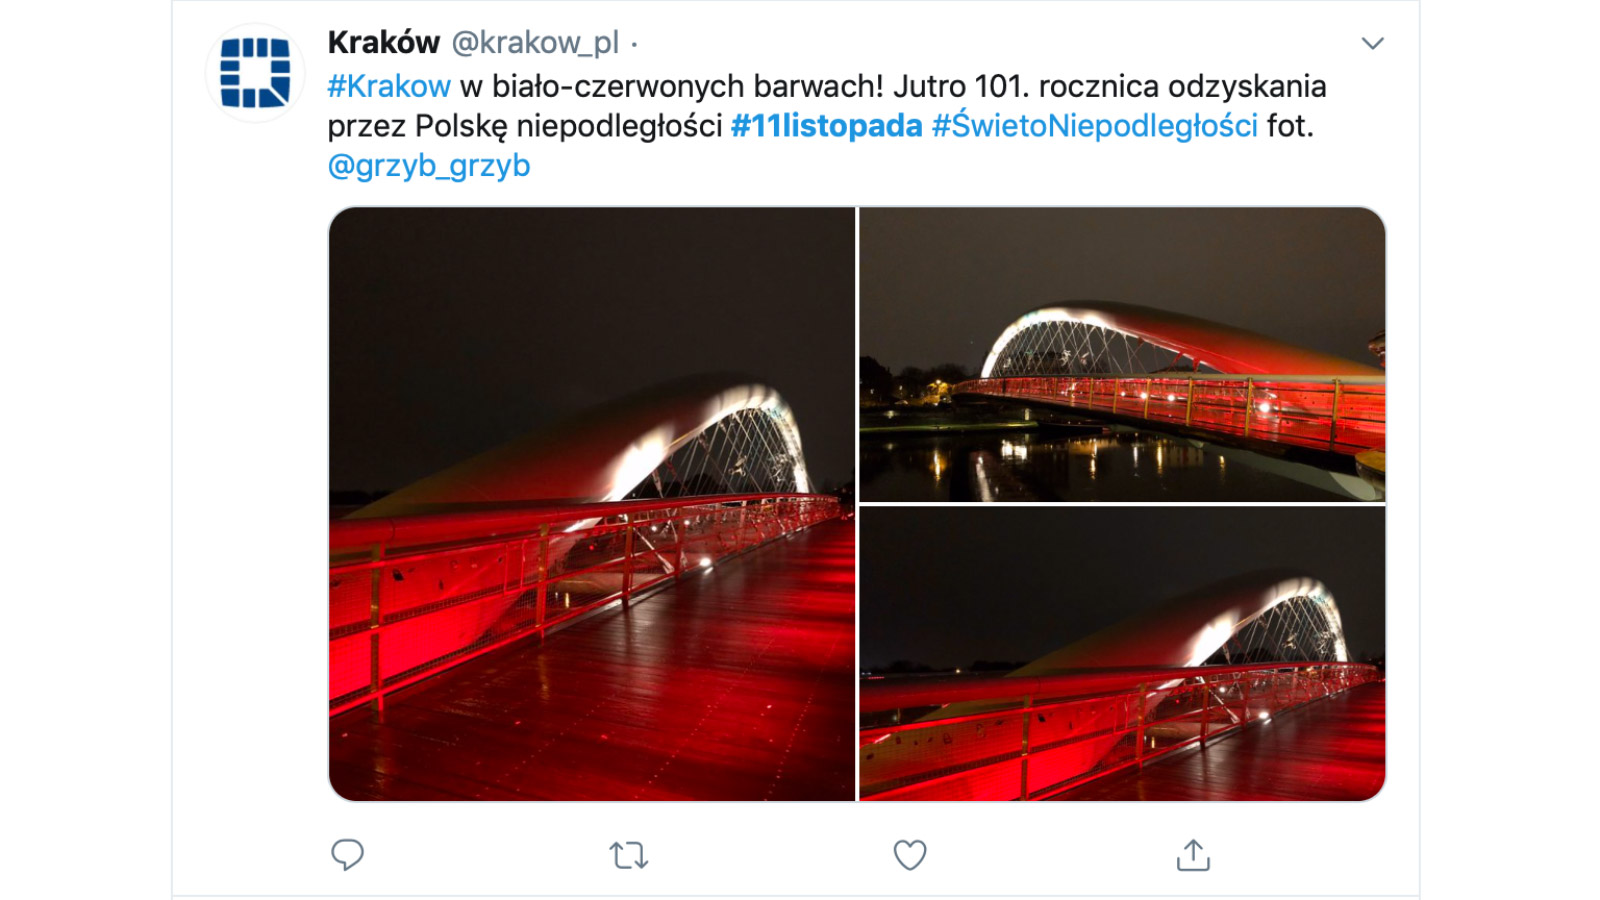 Święto Niepodległości - Jak marki mogą je wykorzystać? real time marketing mediarun niepodleglosc krakow reklama 2019